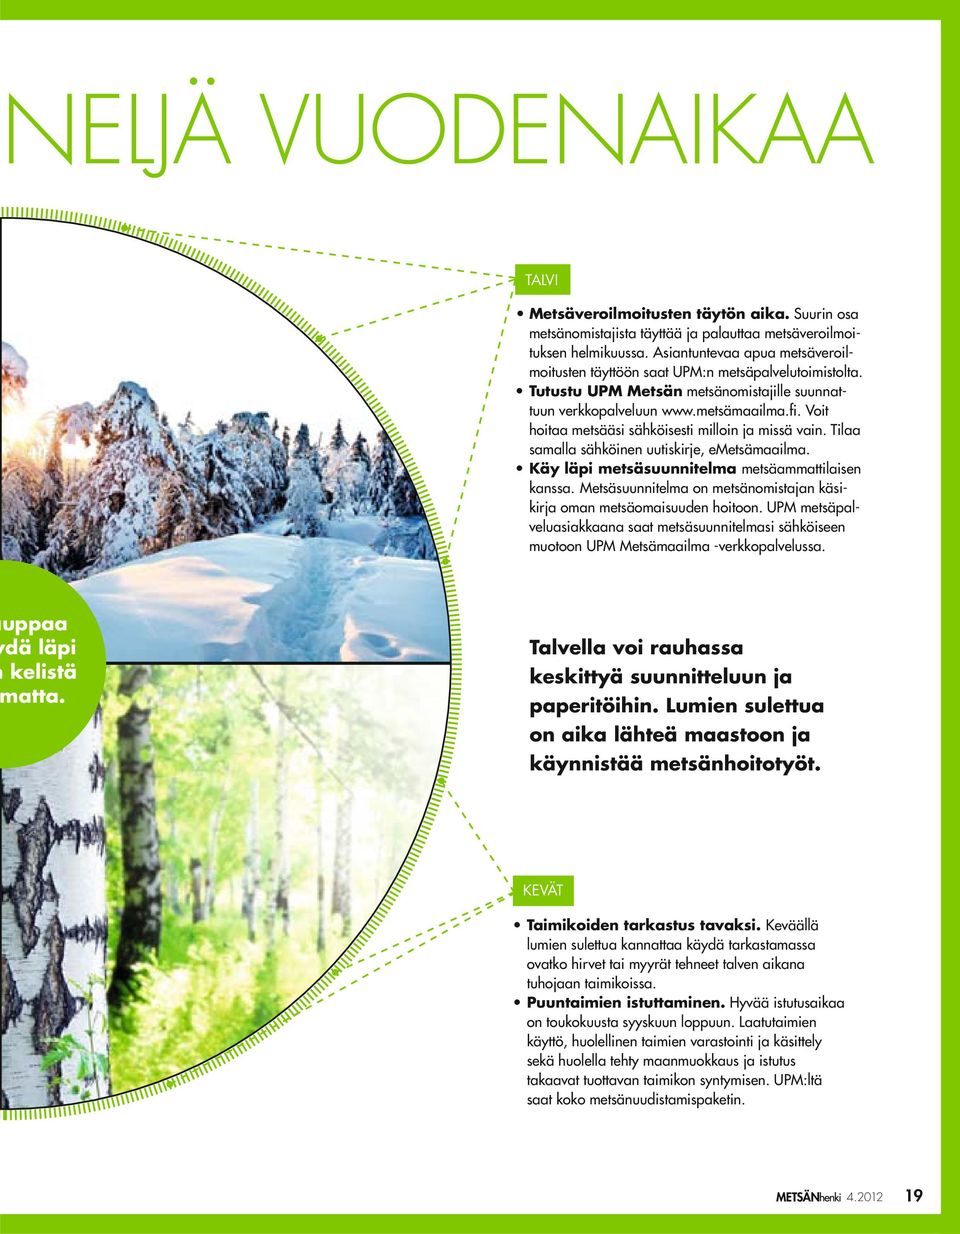 Voit hoitaa metsääsi sähköisesti milloin ja missä vain. Tilaa samalla sähköinen uutiskirje, emetsämaailma. Käy läpi metsäsuunnitelma metsäammattilaisen kanssa.